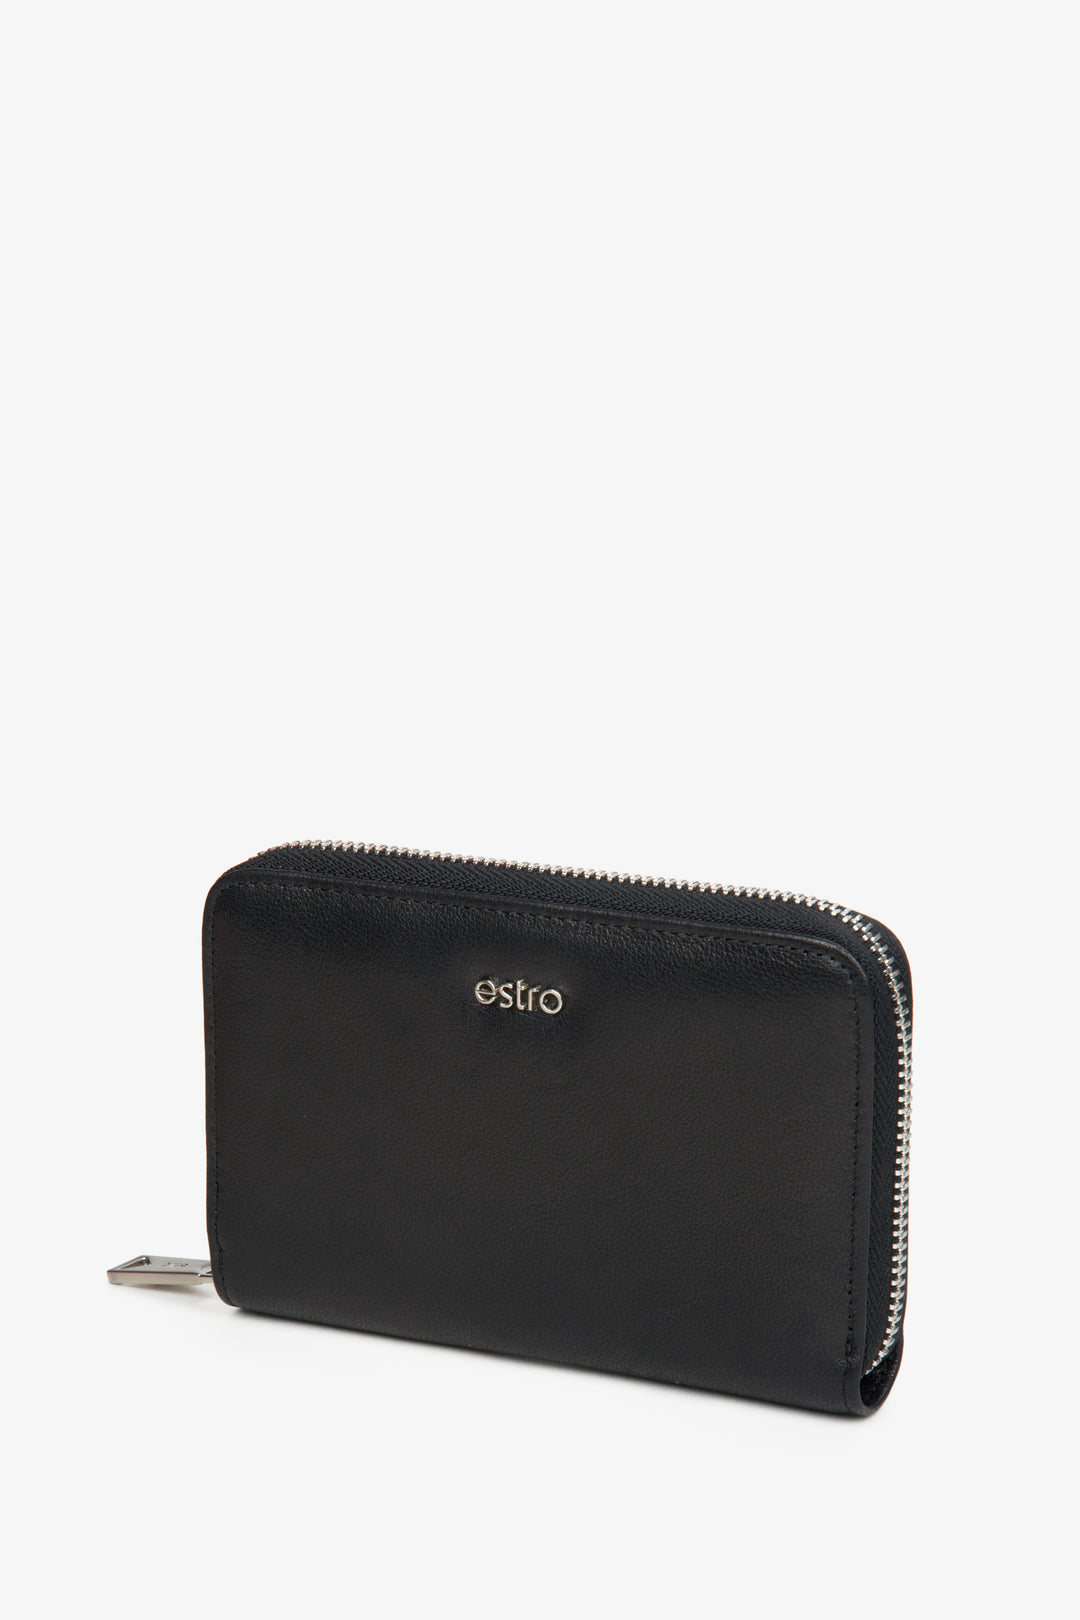 Men's Black Wallet made of Genuine Leather Estro ER00114490.